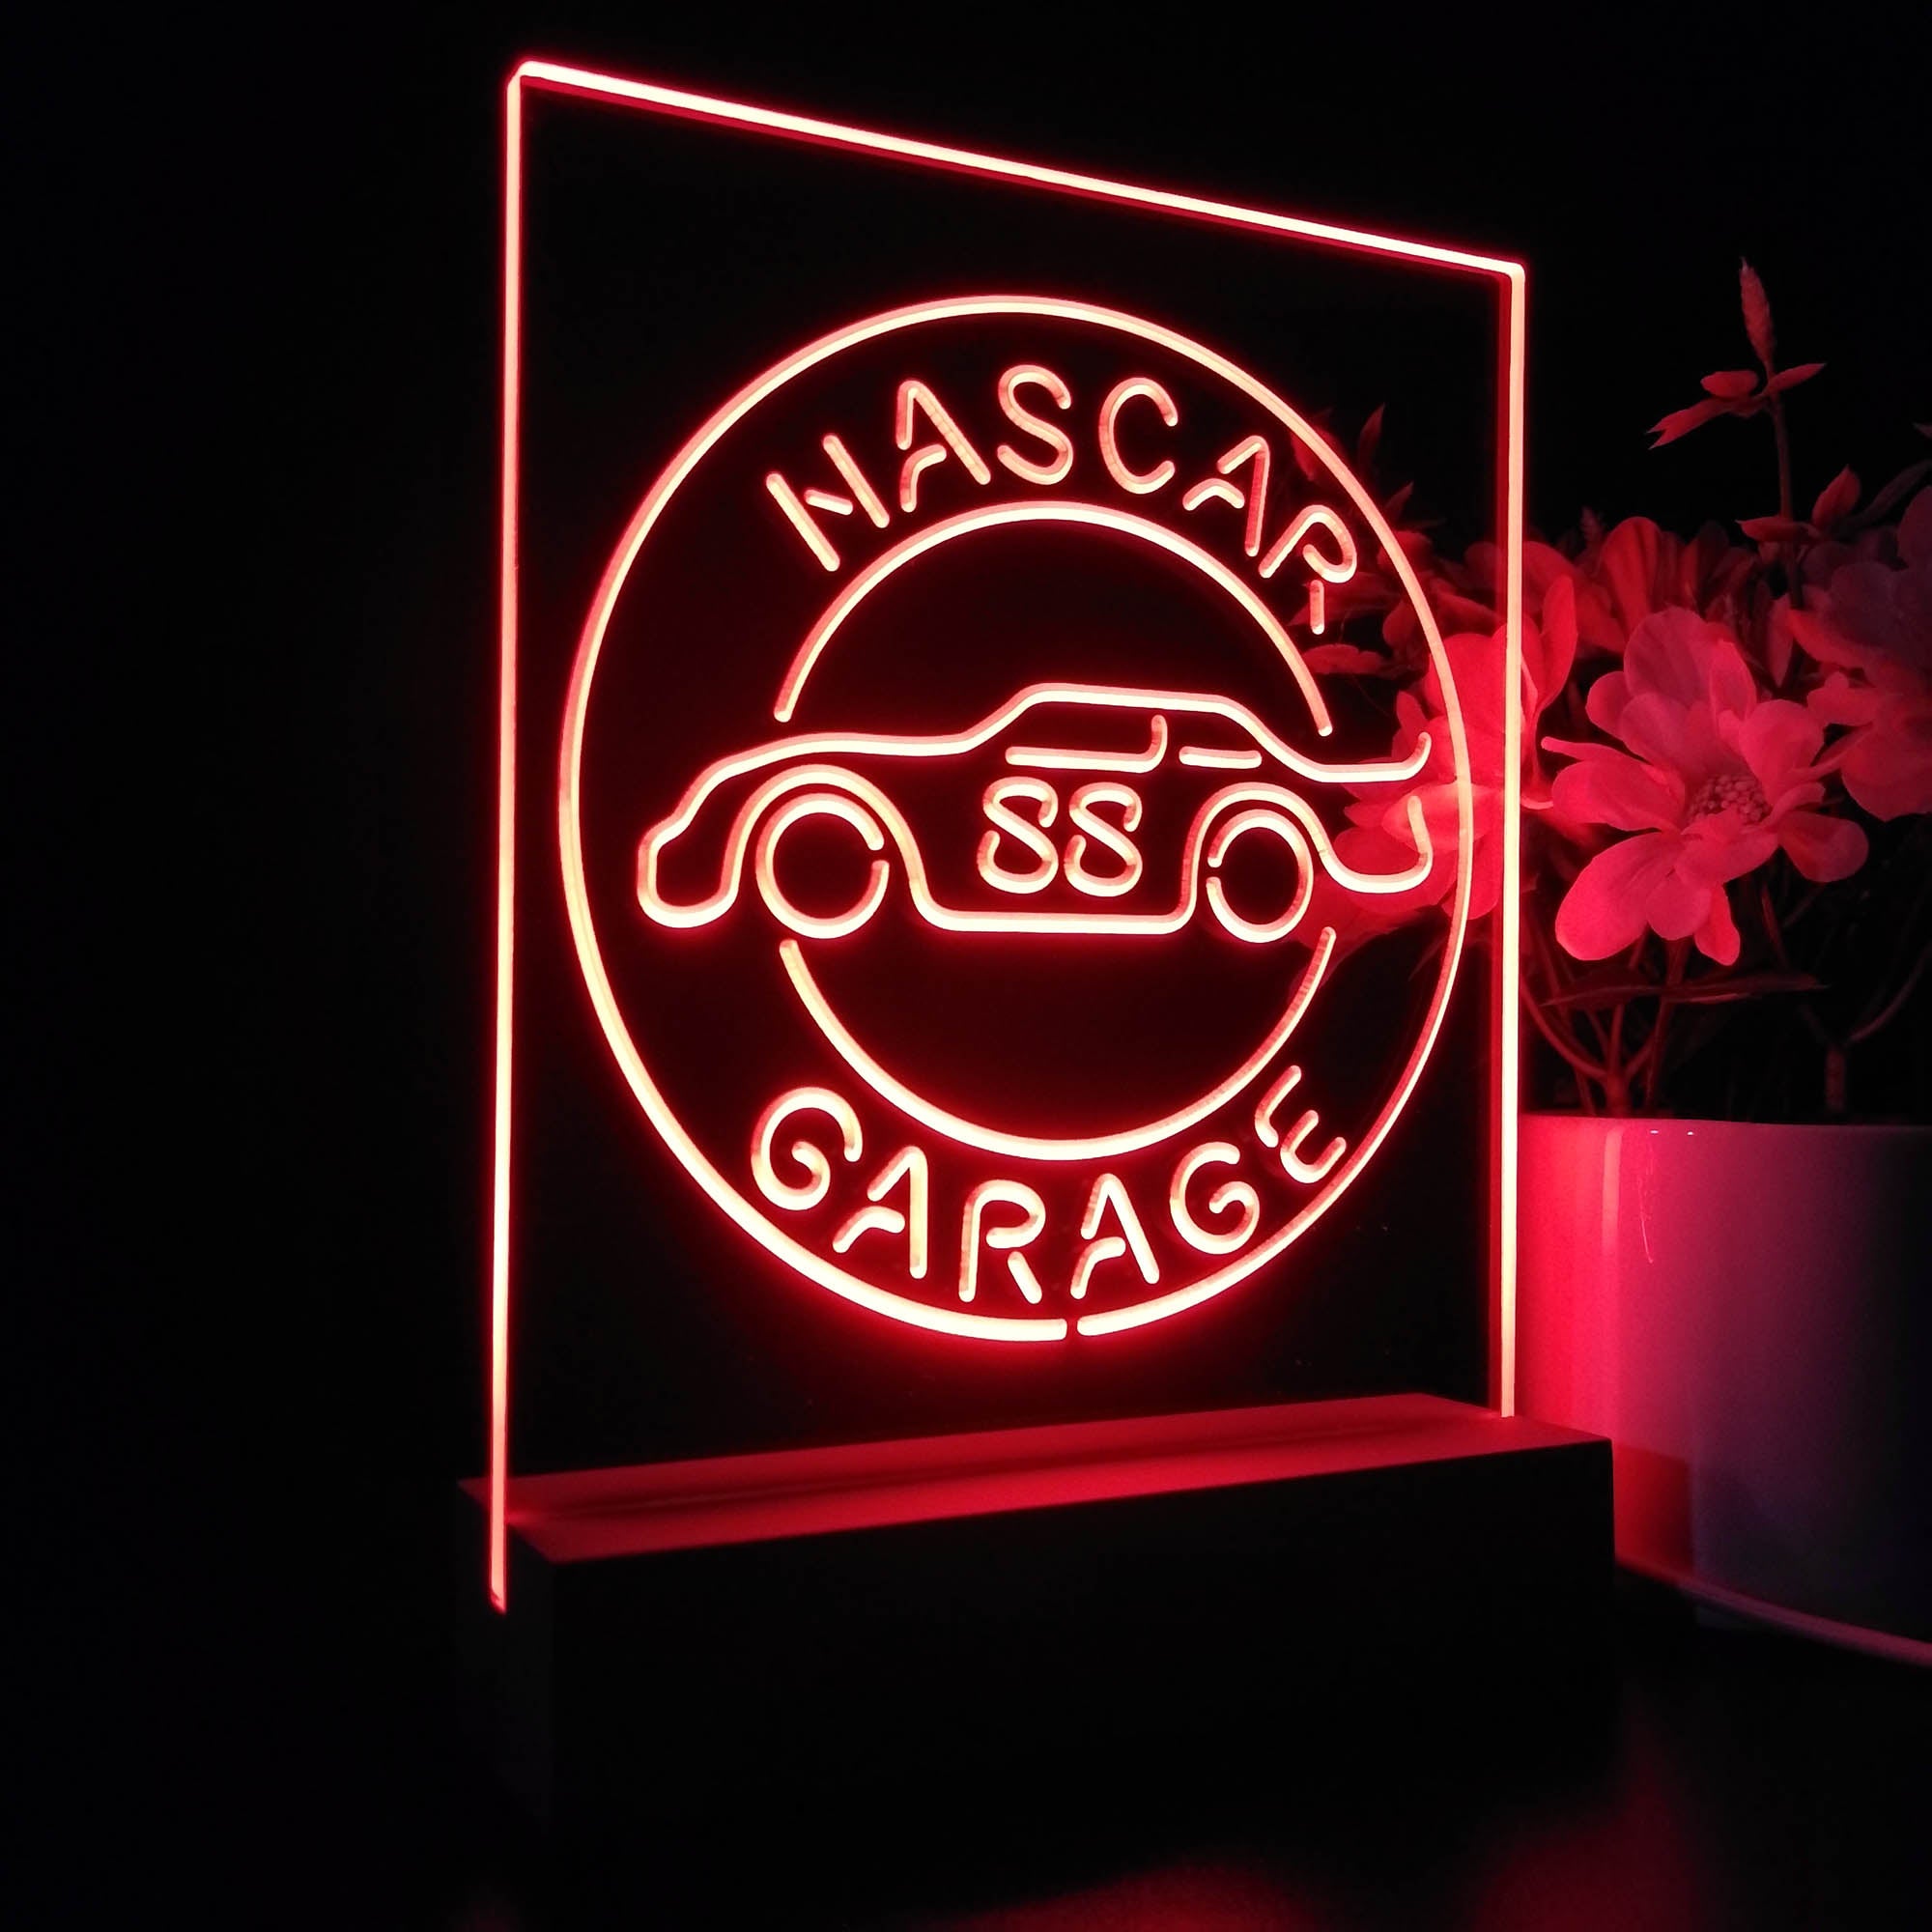 Nascar 88 Garage Dale Jr. 3D LED Optical Illusion Sport Team Night Light